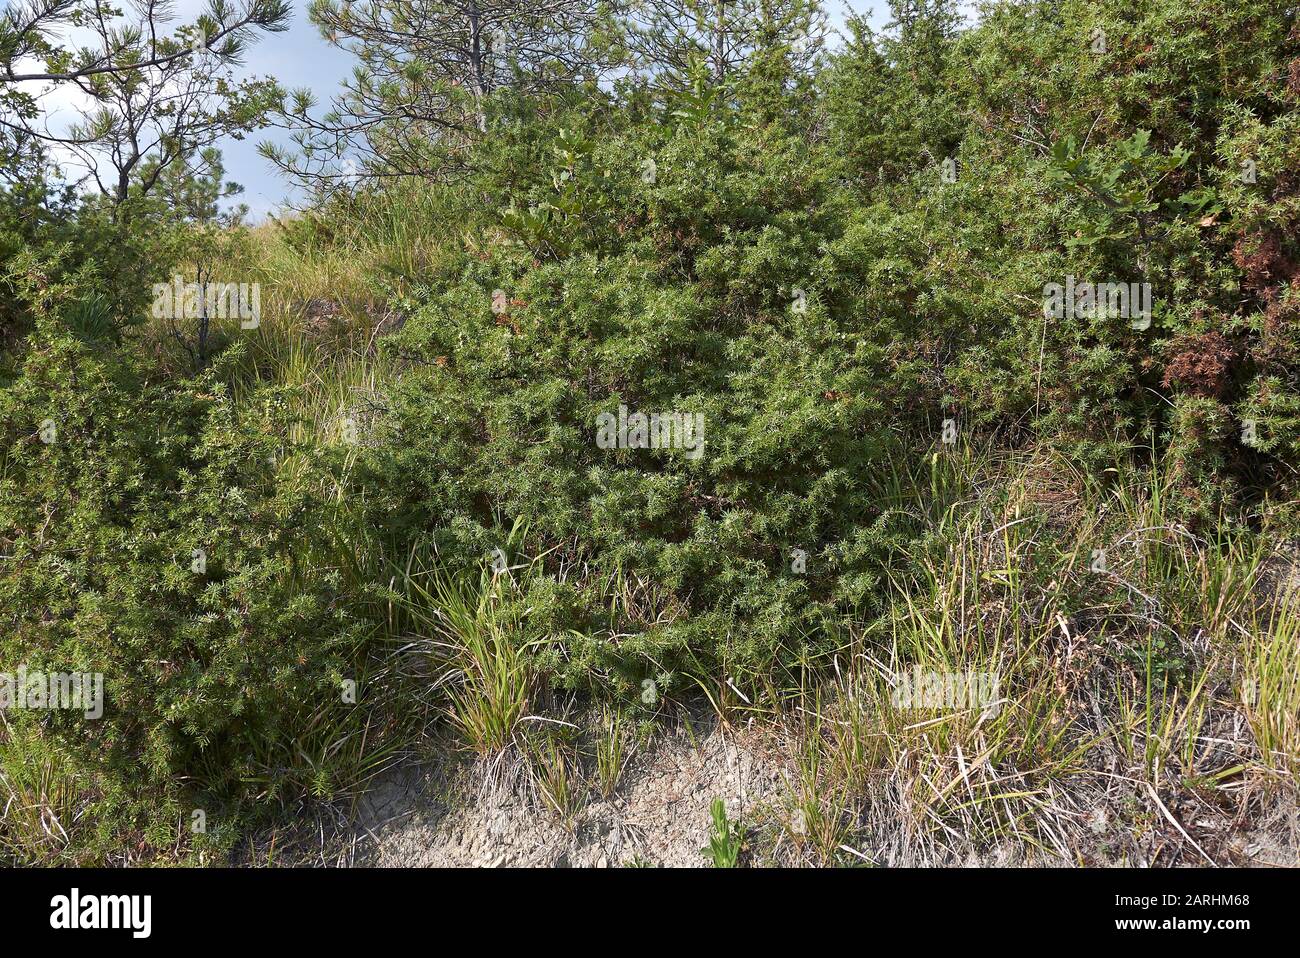 branch close up of Juniperus communis shrub Stock Photo